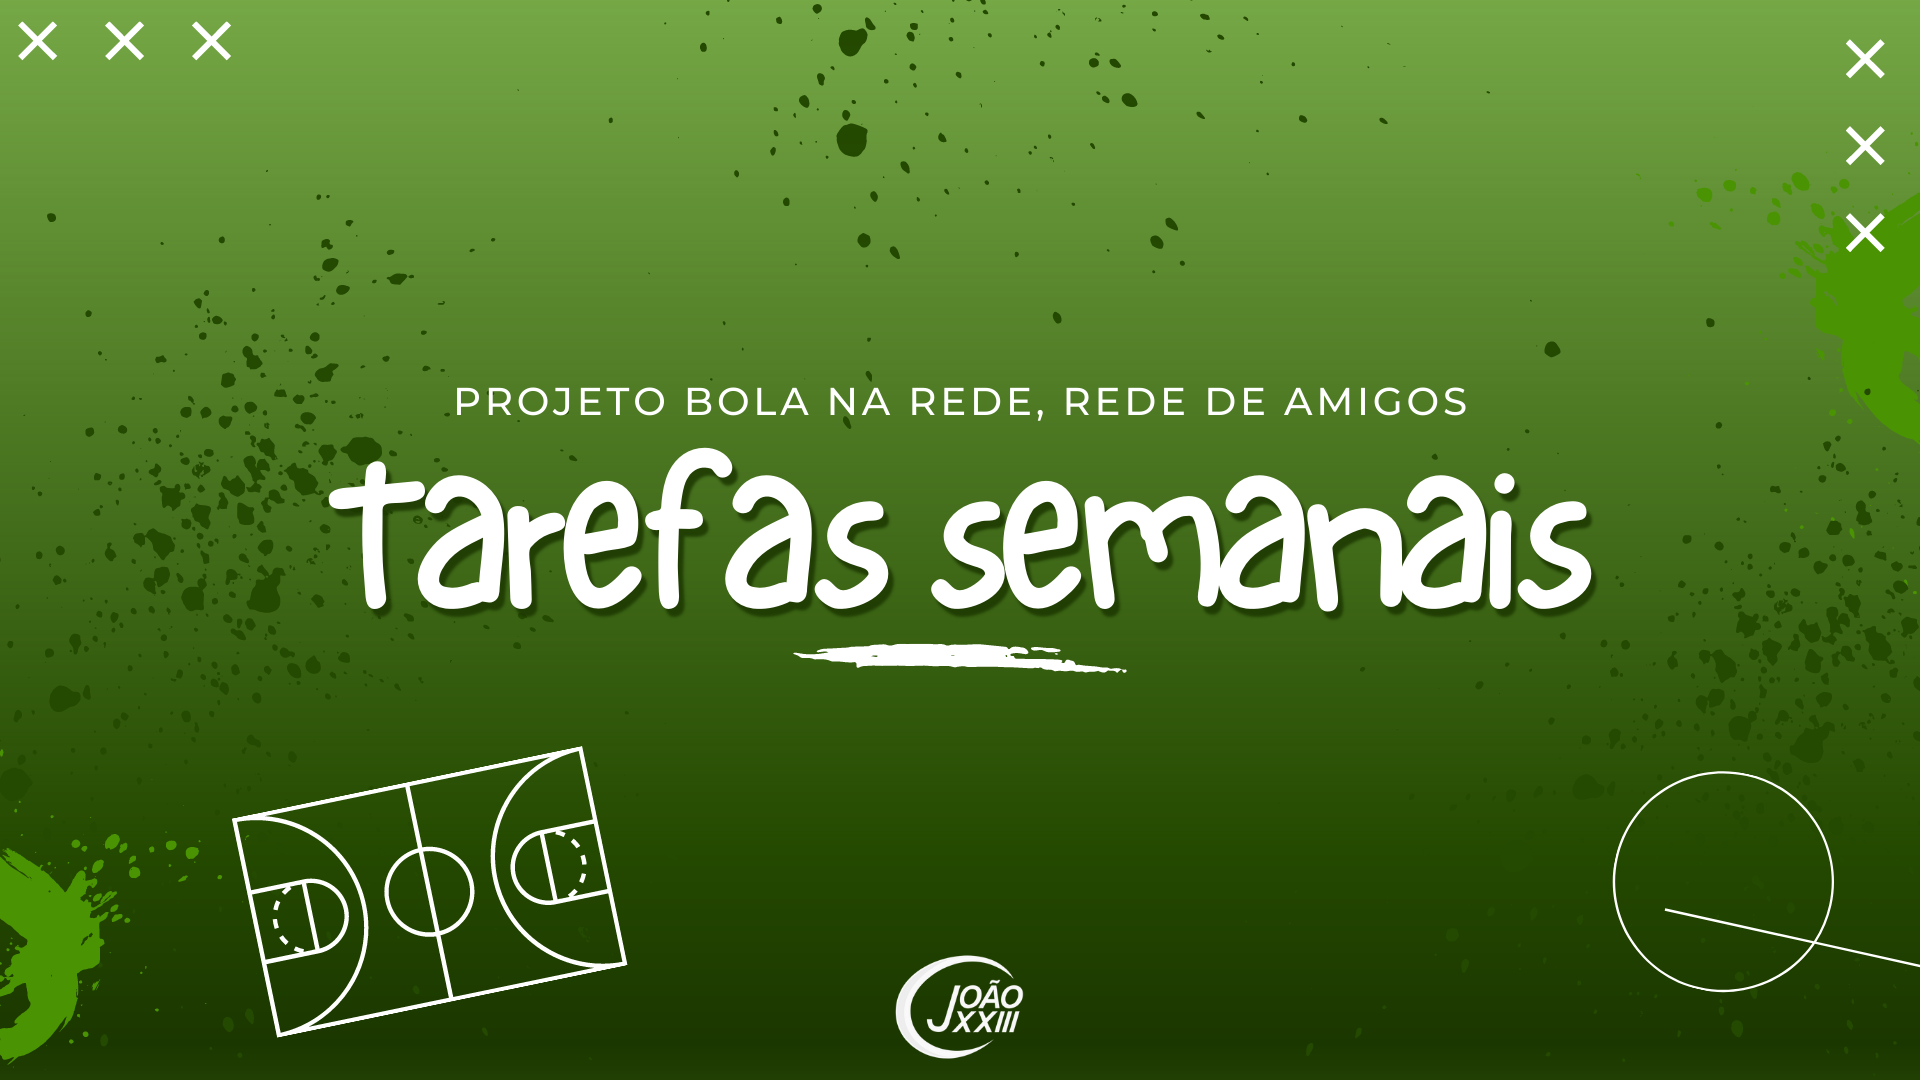 You are currently viewing Tarefas semanais – Projeto “Bola na rede, rede de amigos”